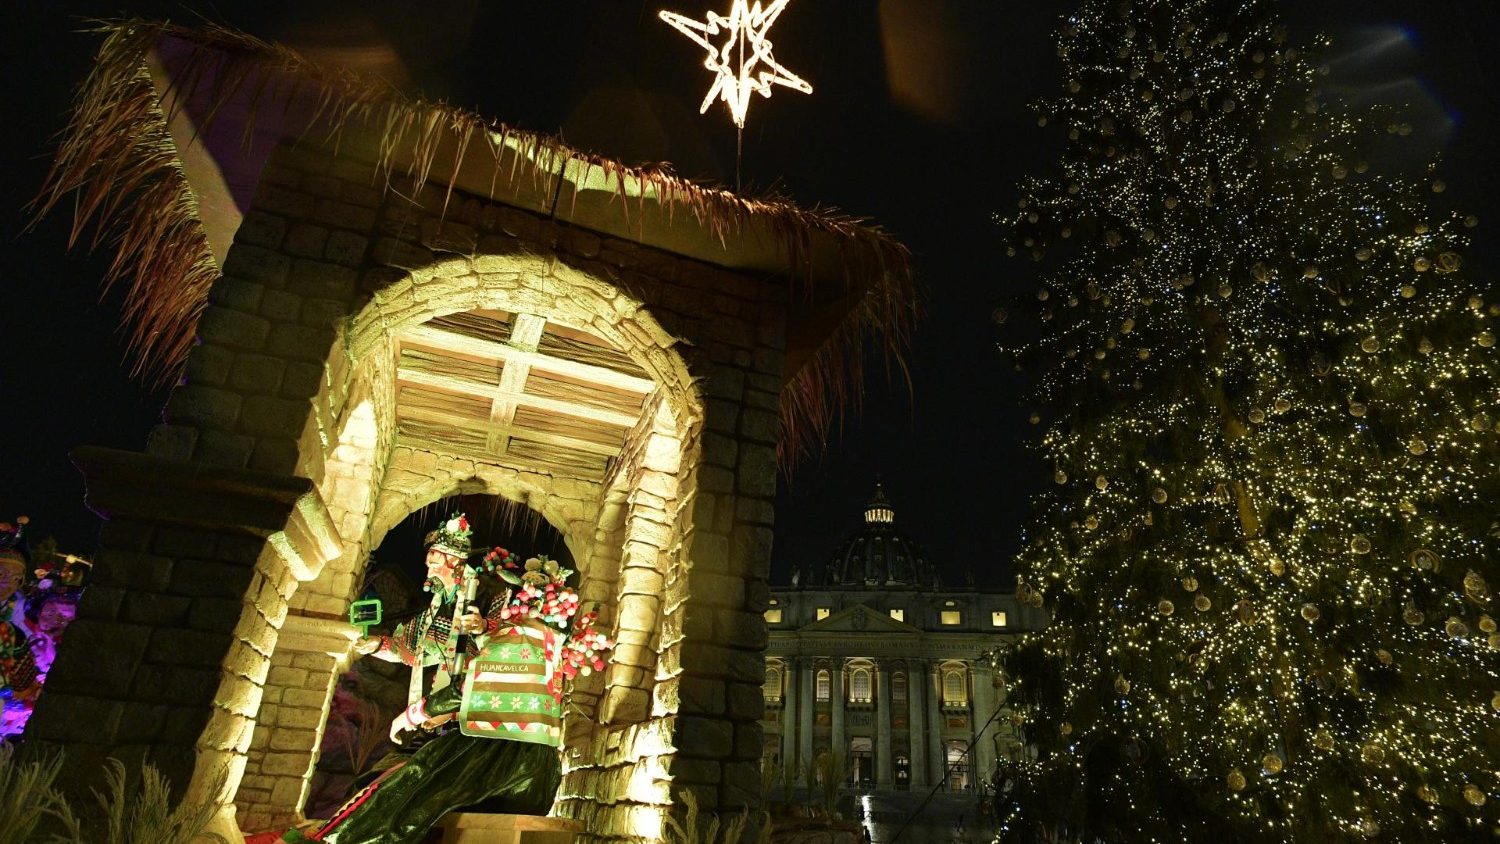 Inaugurados Presépio e árvore de Natal na Praça São Pedro - Vatican News